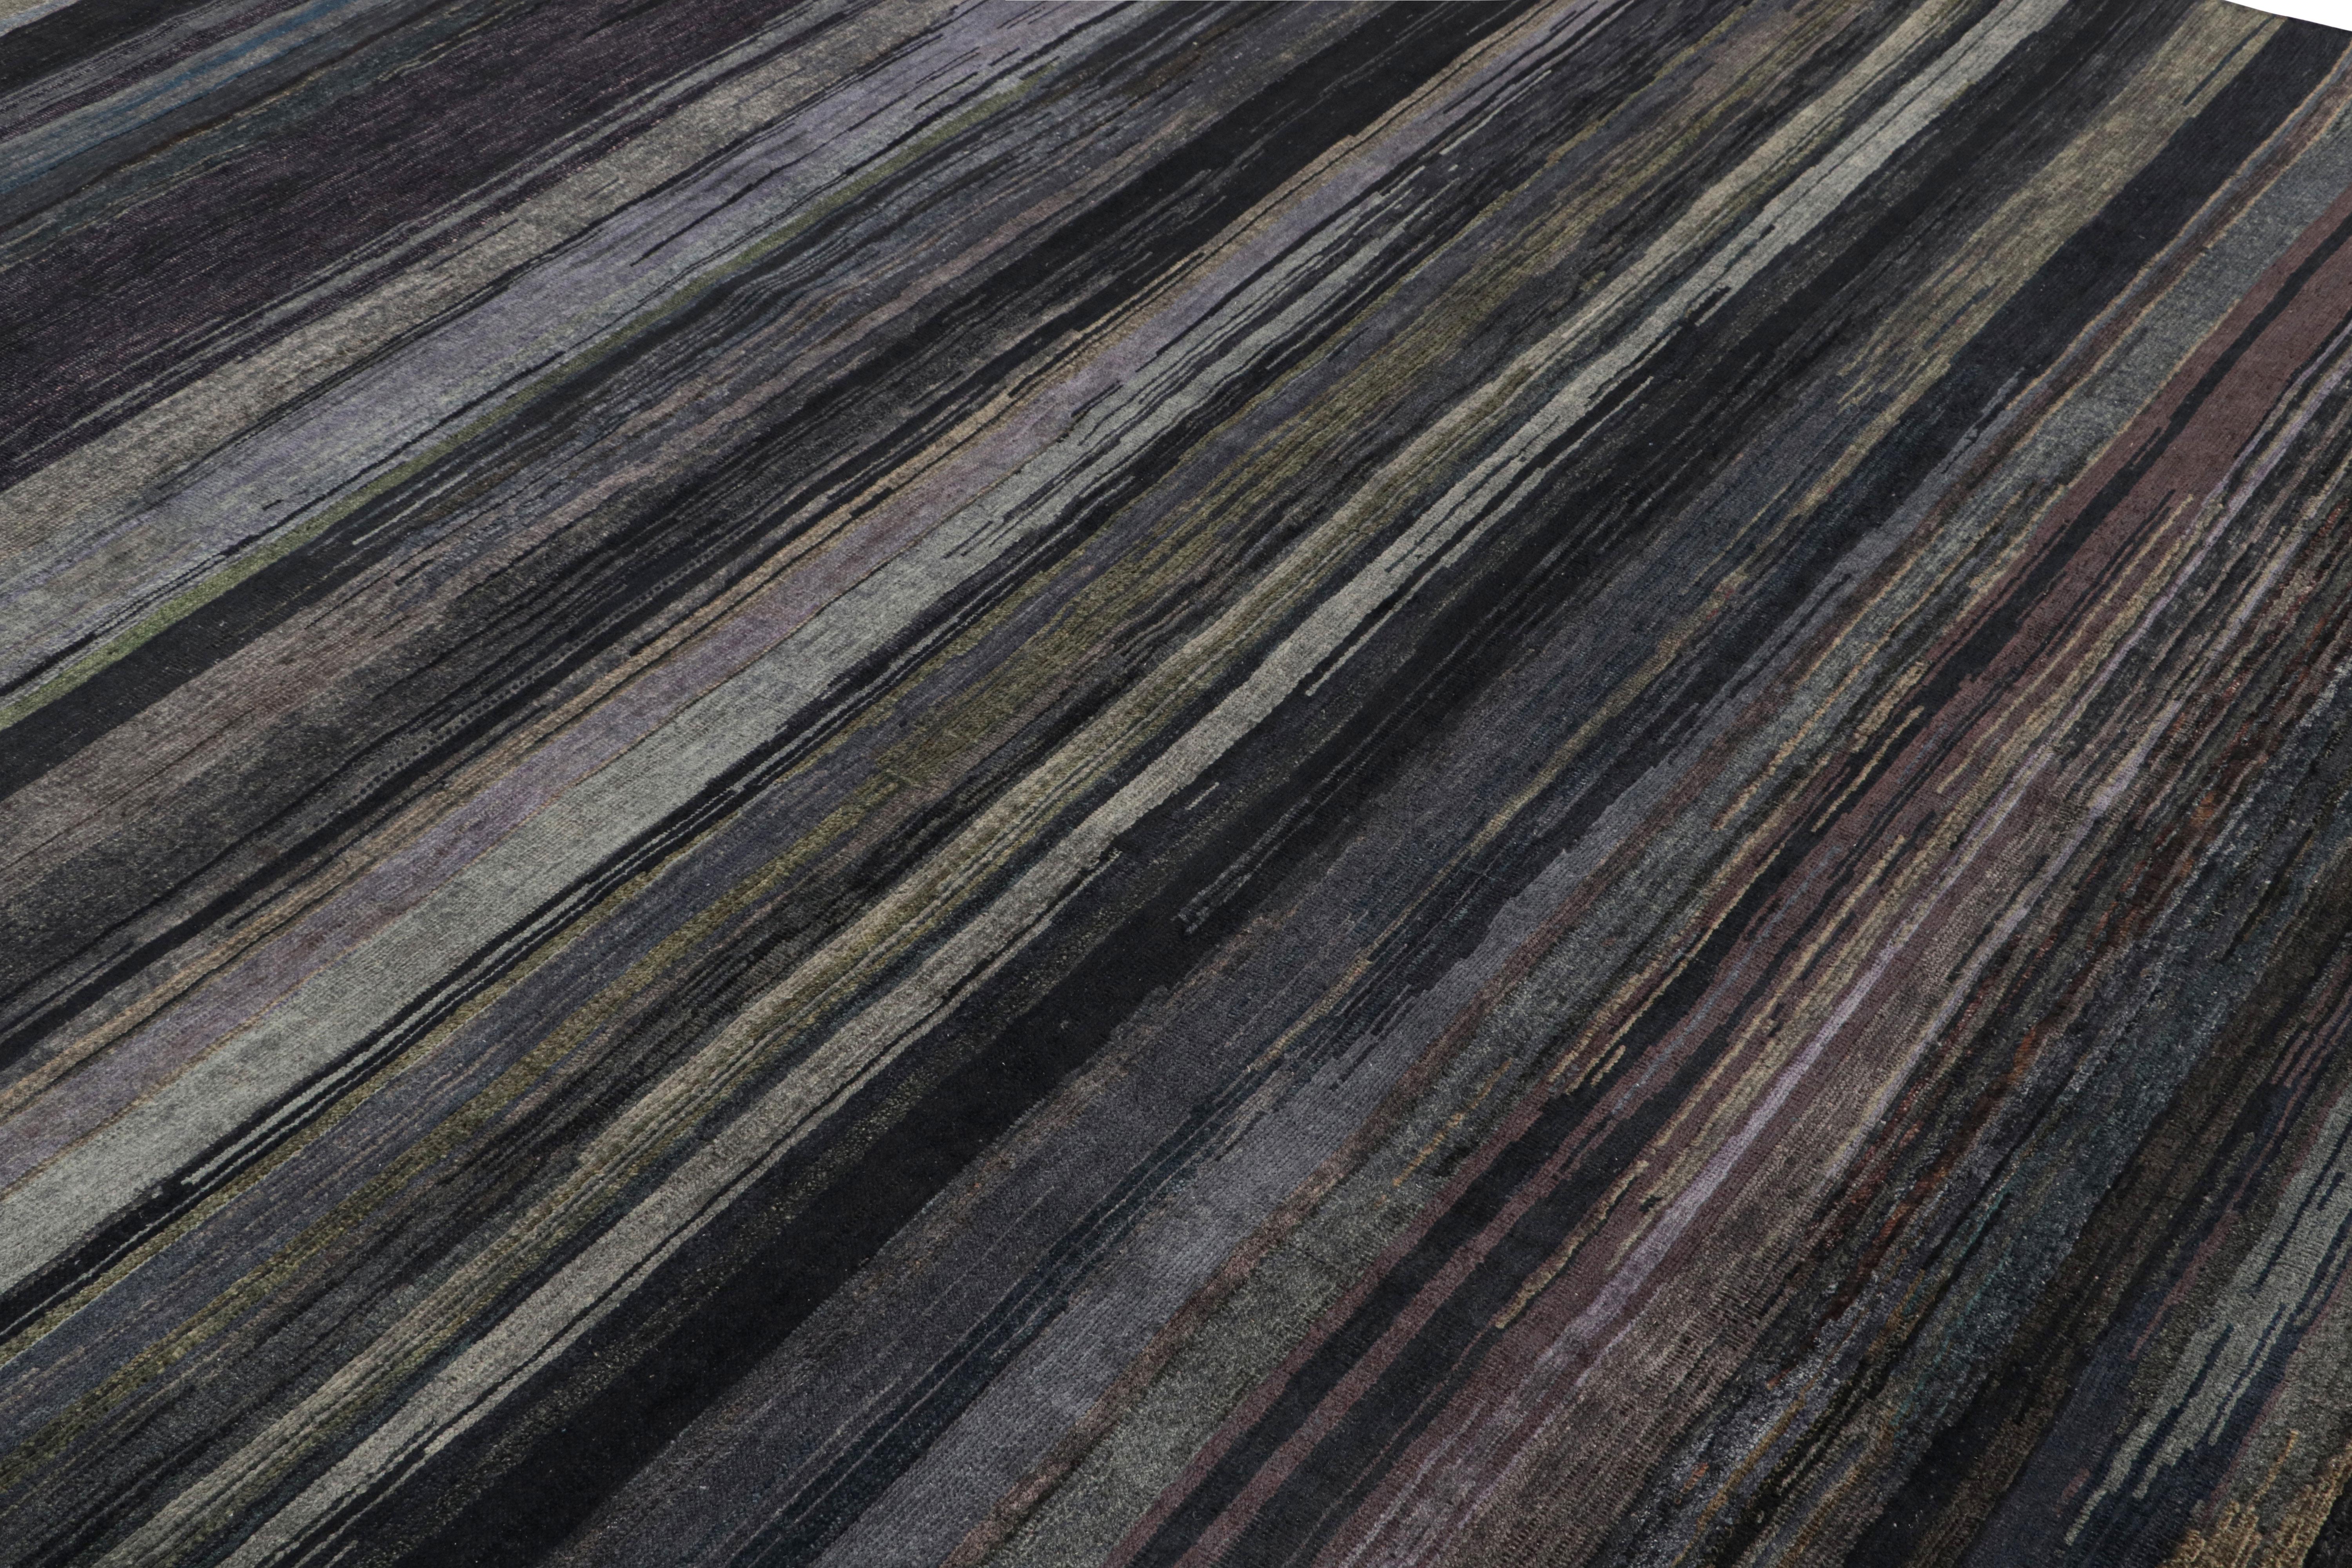 Dieser 9x12 große Strukturteppich ist eine aufregende Neuheit in der Texture of Color Collection'S von Rug & Kilim.

Weiter zum Design:

Dieser Teppich aus handgeknüpfter Wolle spiegelt eine neue Sichtweise auf das Thema dieser Collection'S wider -